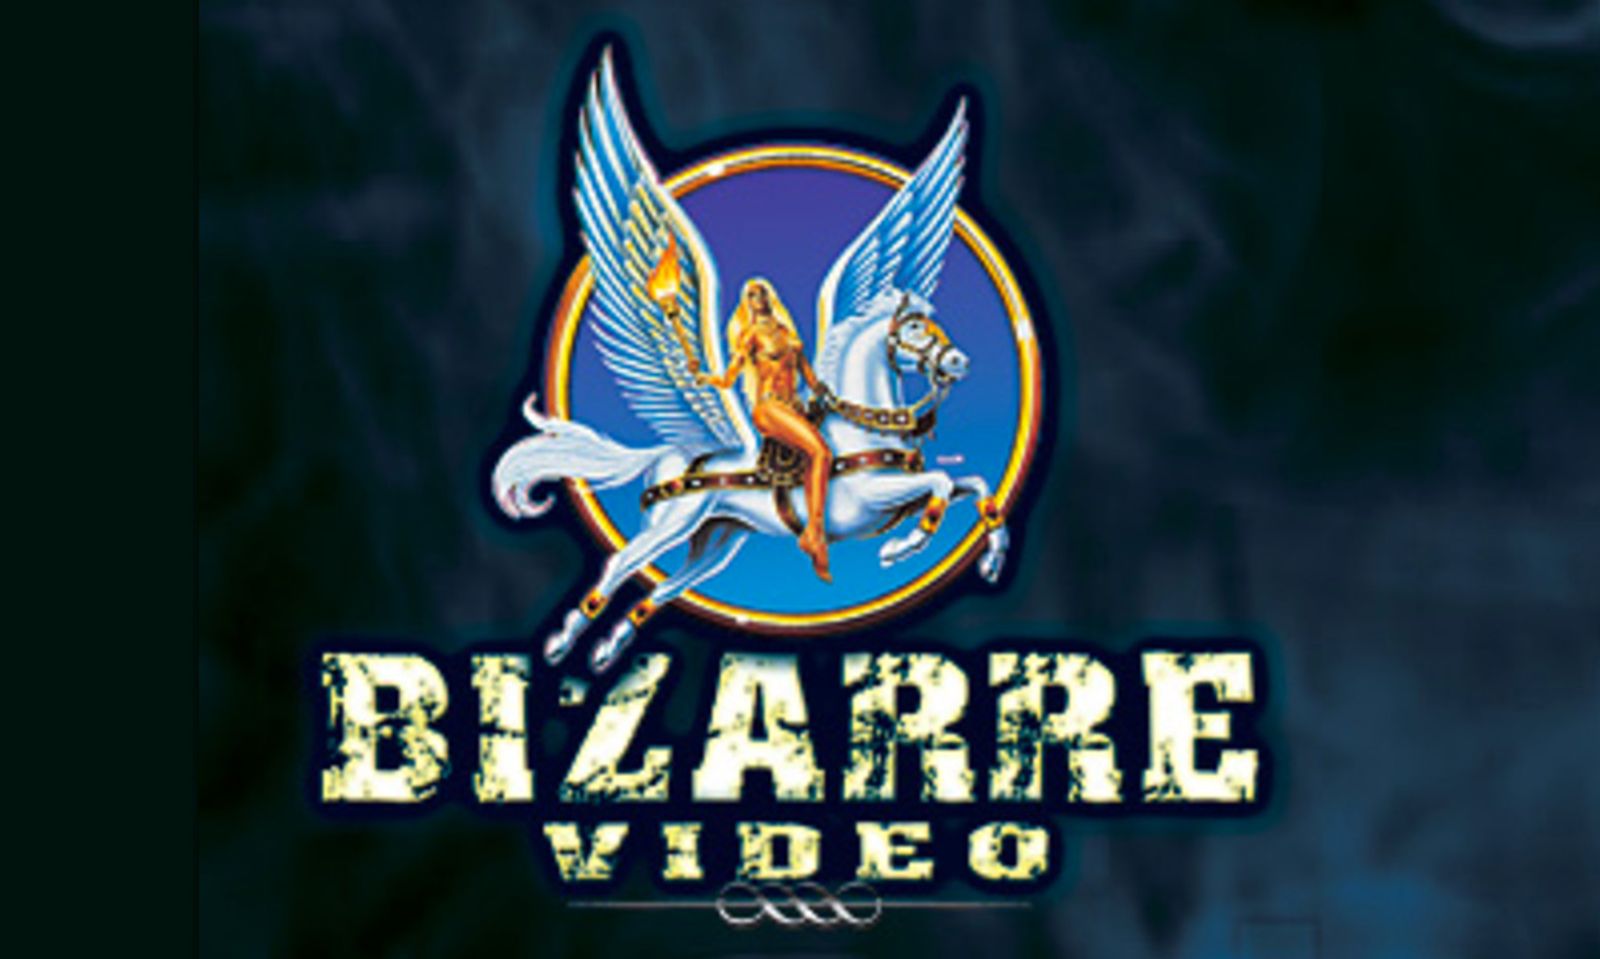 BizarreVideo.com Relaunches